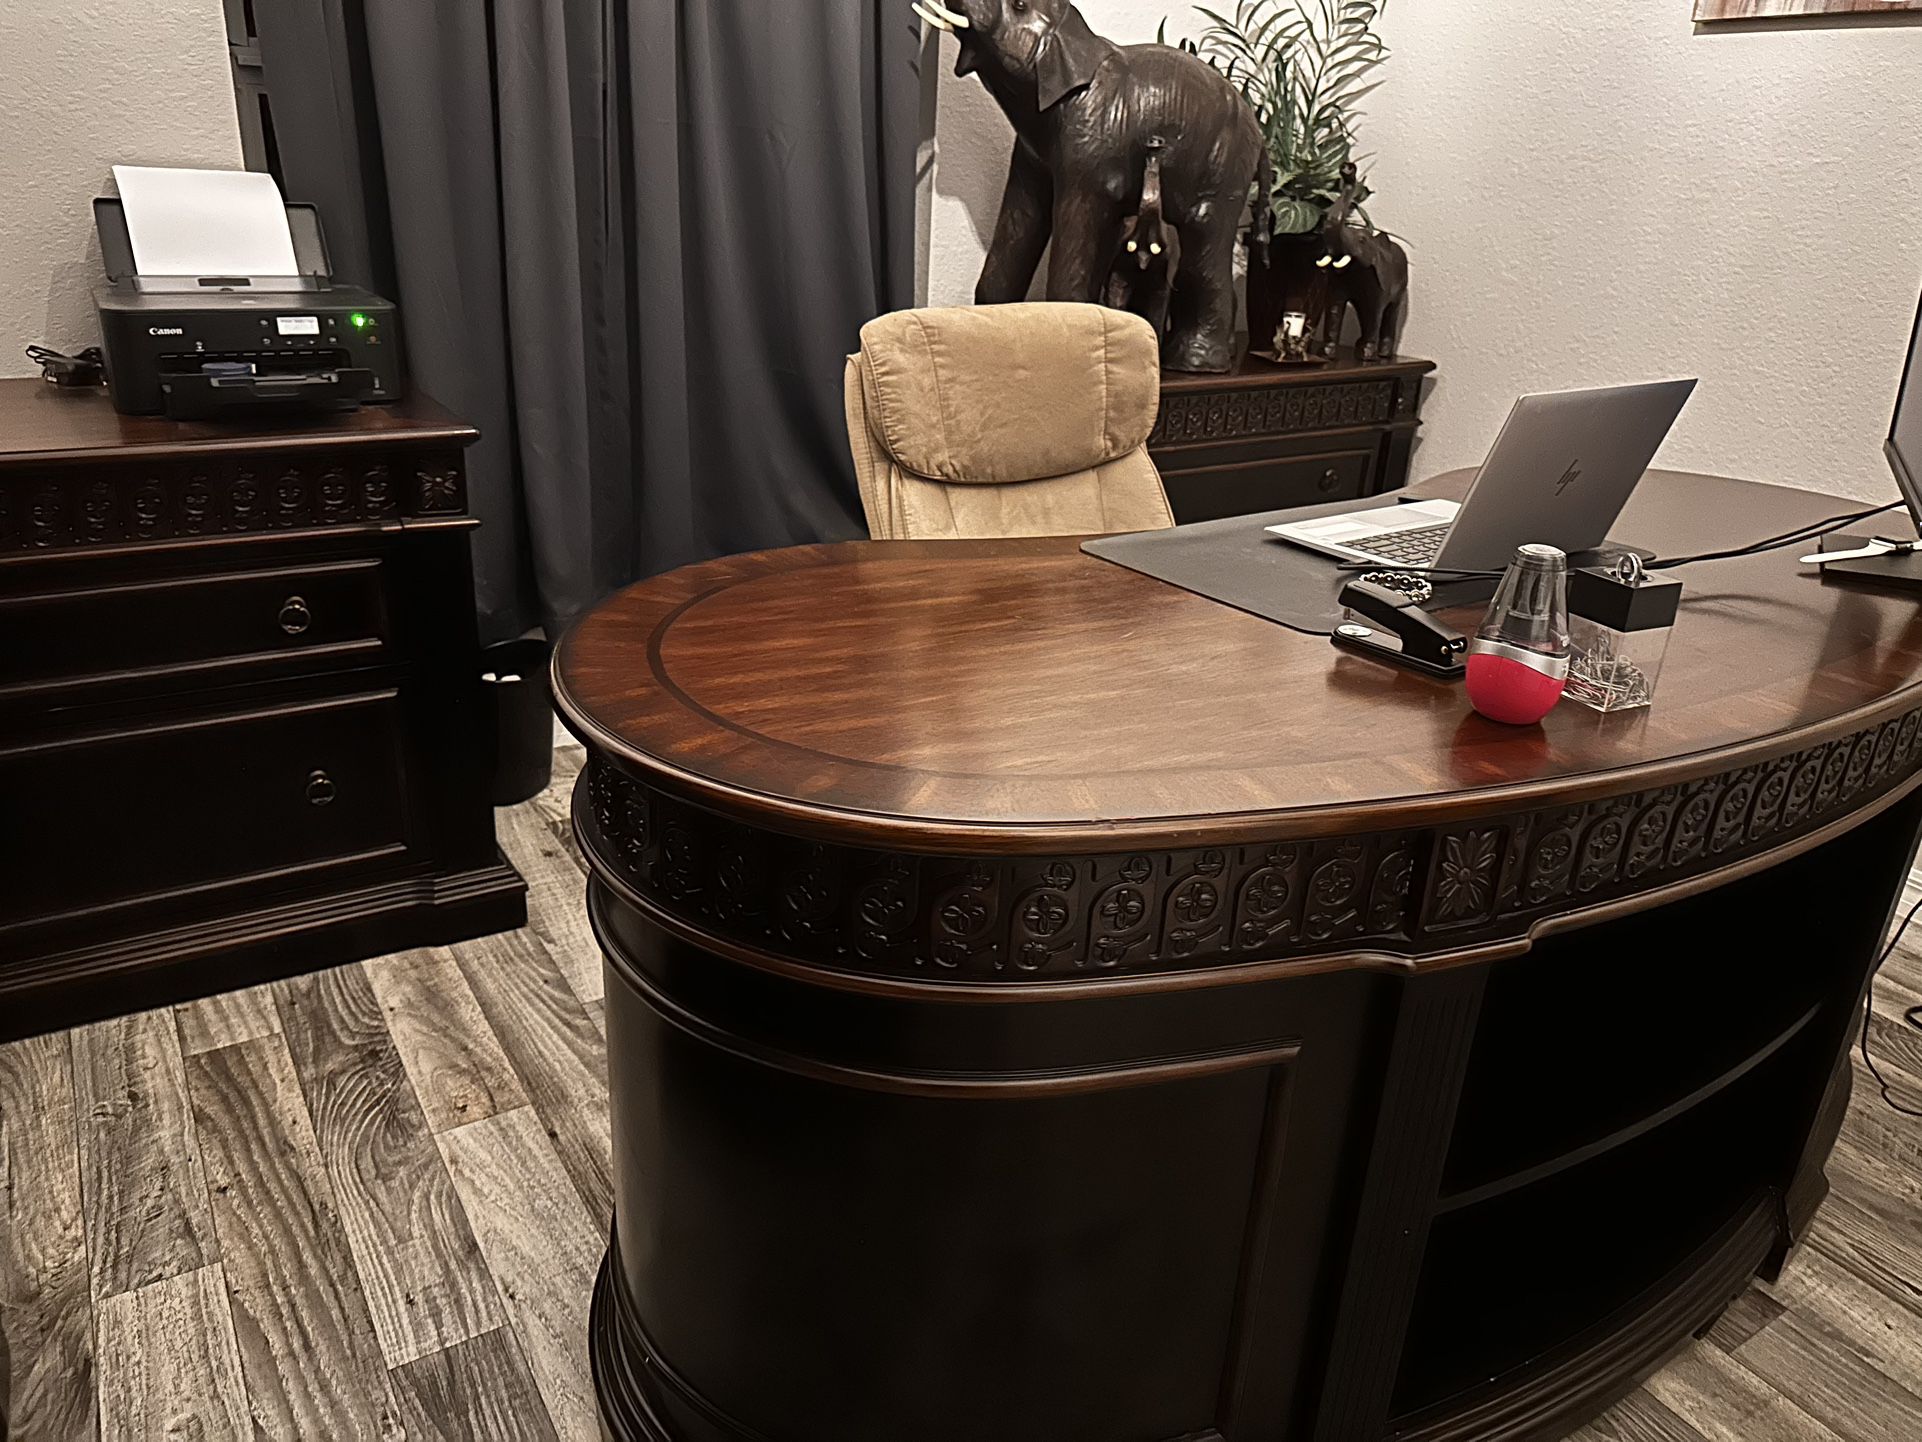 Professional Executive Office furniture set solid wood desk, 2 file cabinets, bookshelf. Desk set